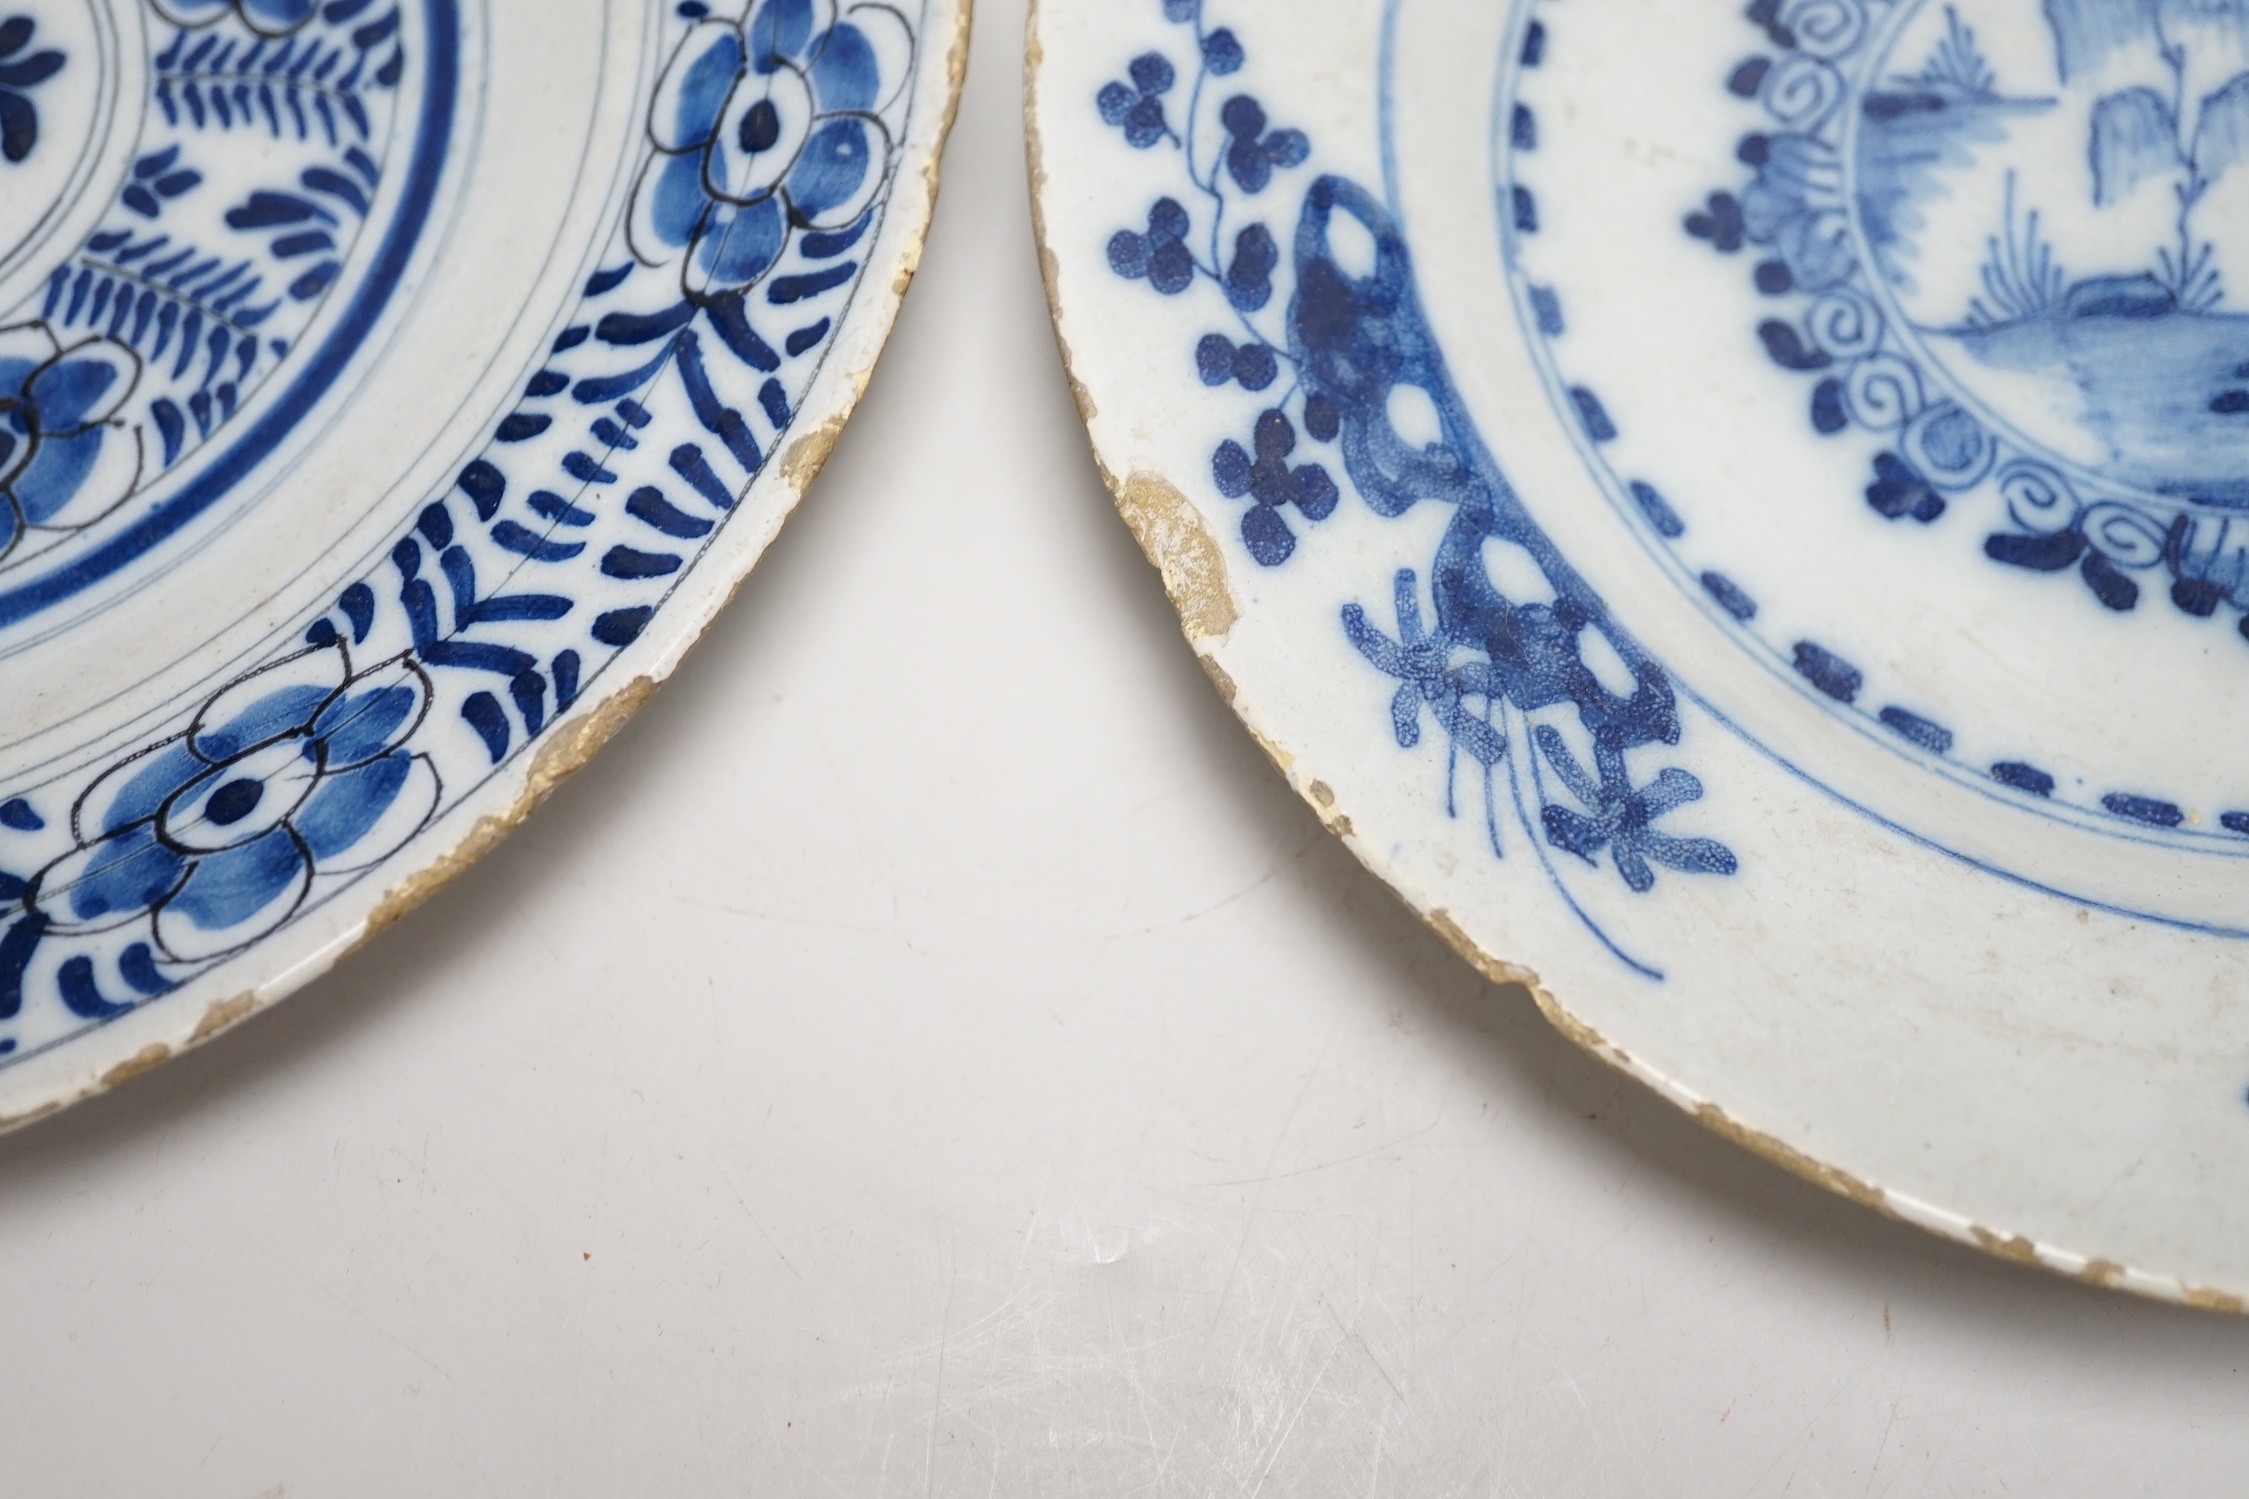 Two 18th century Delft plates, 24cm